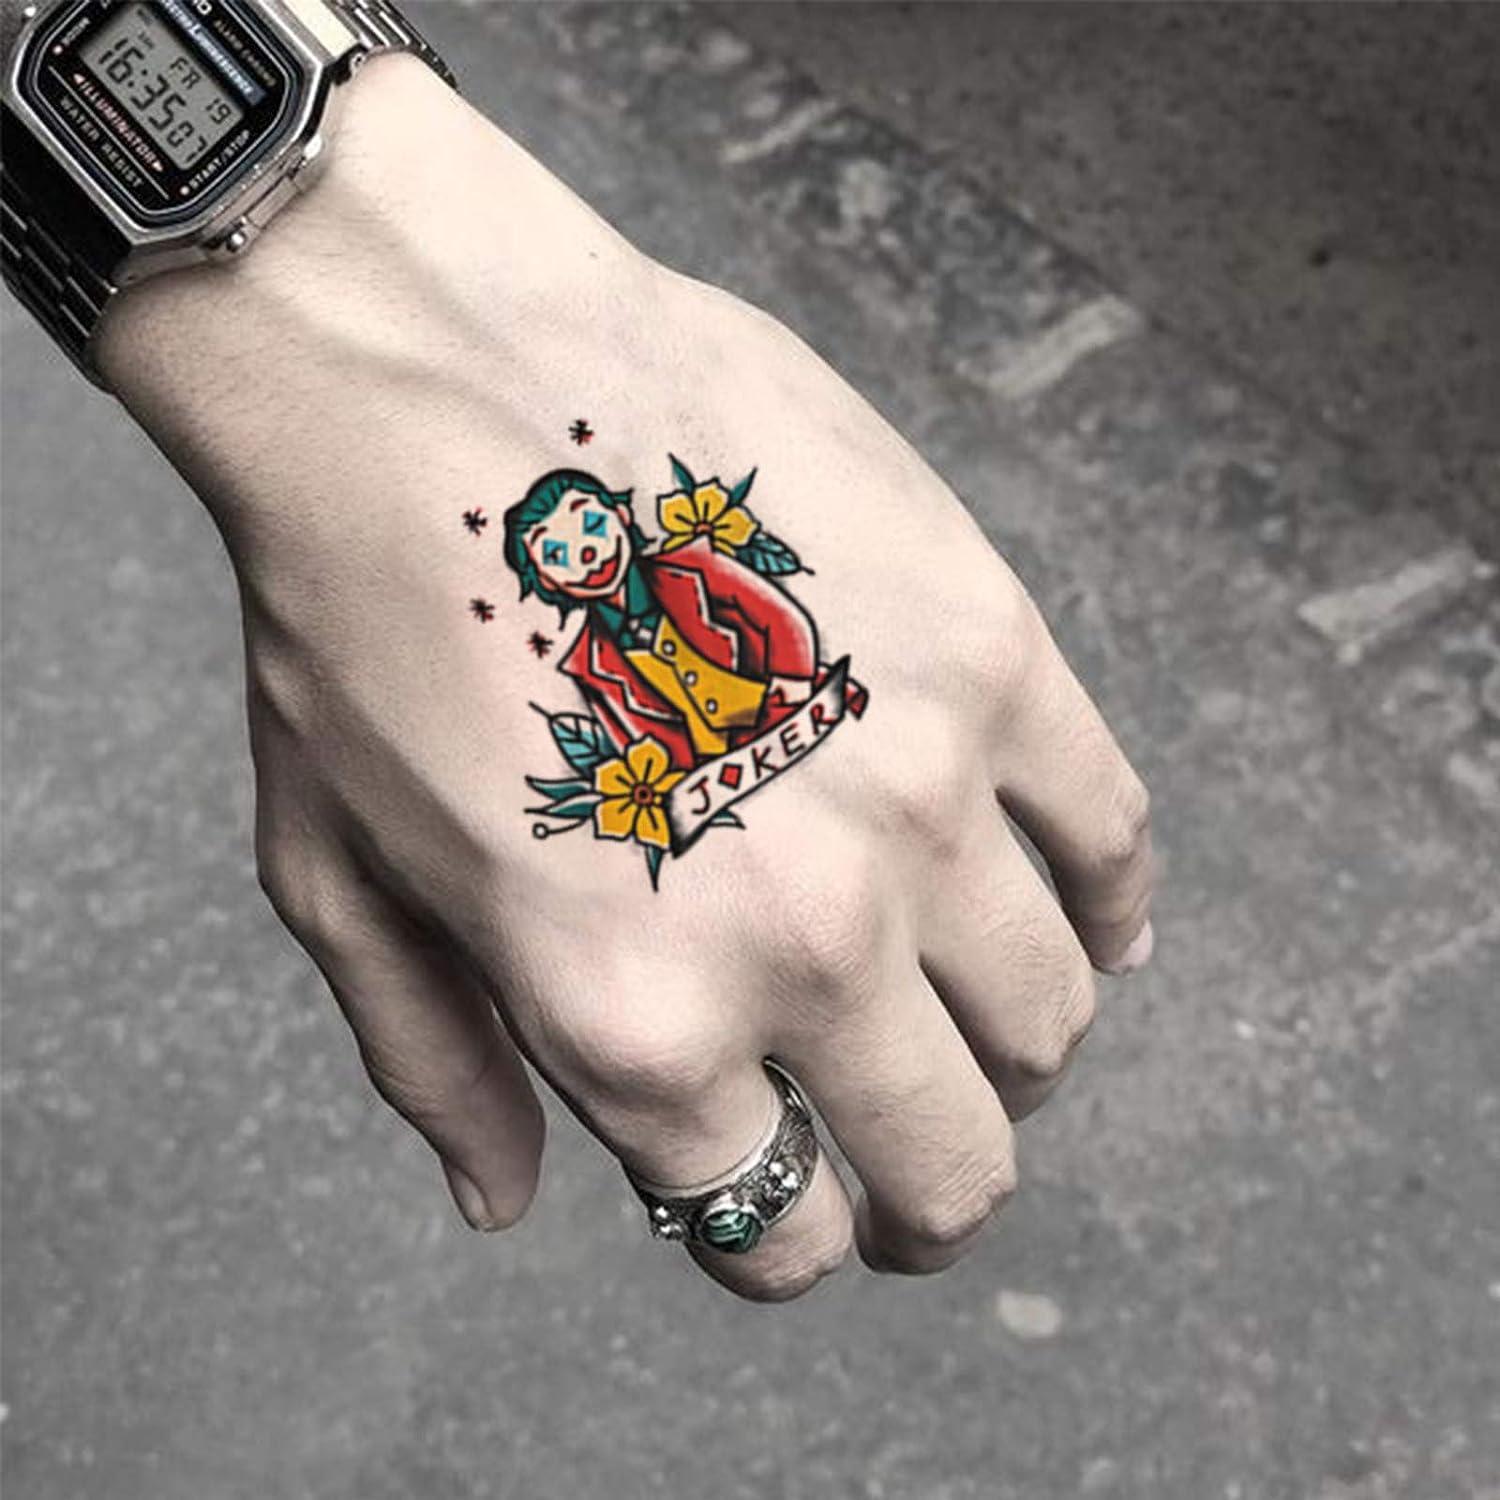 tattoos Lovers | Flickr